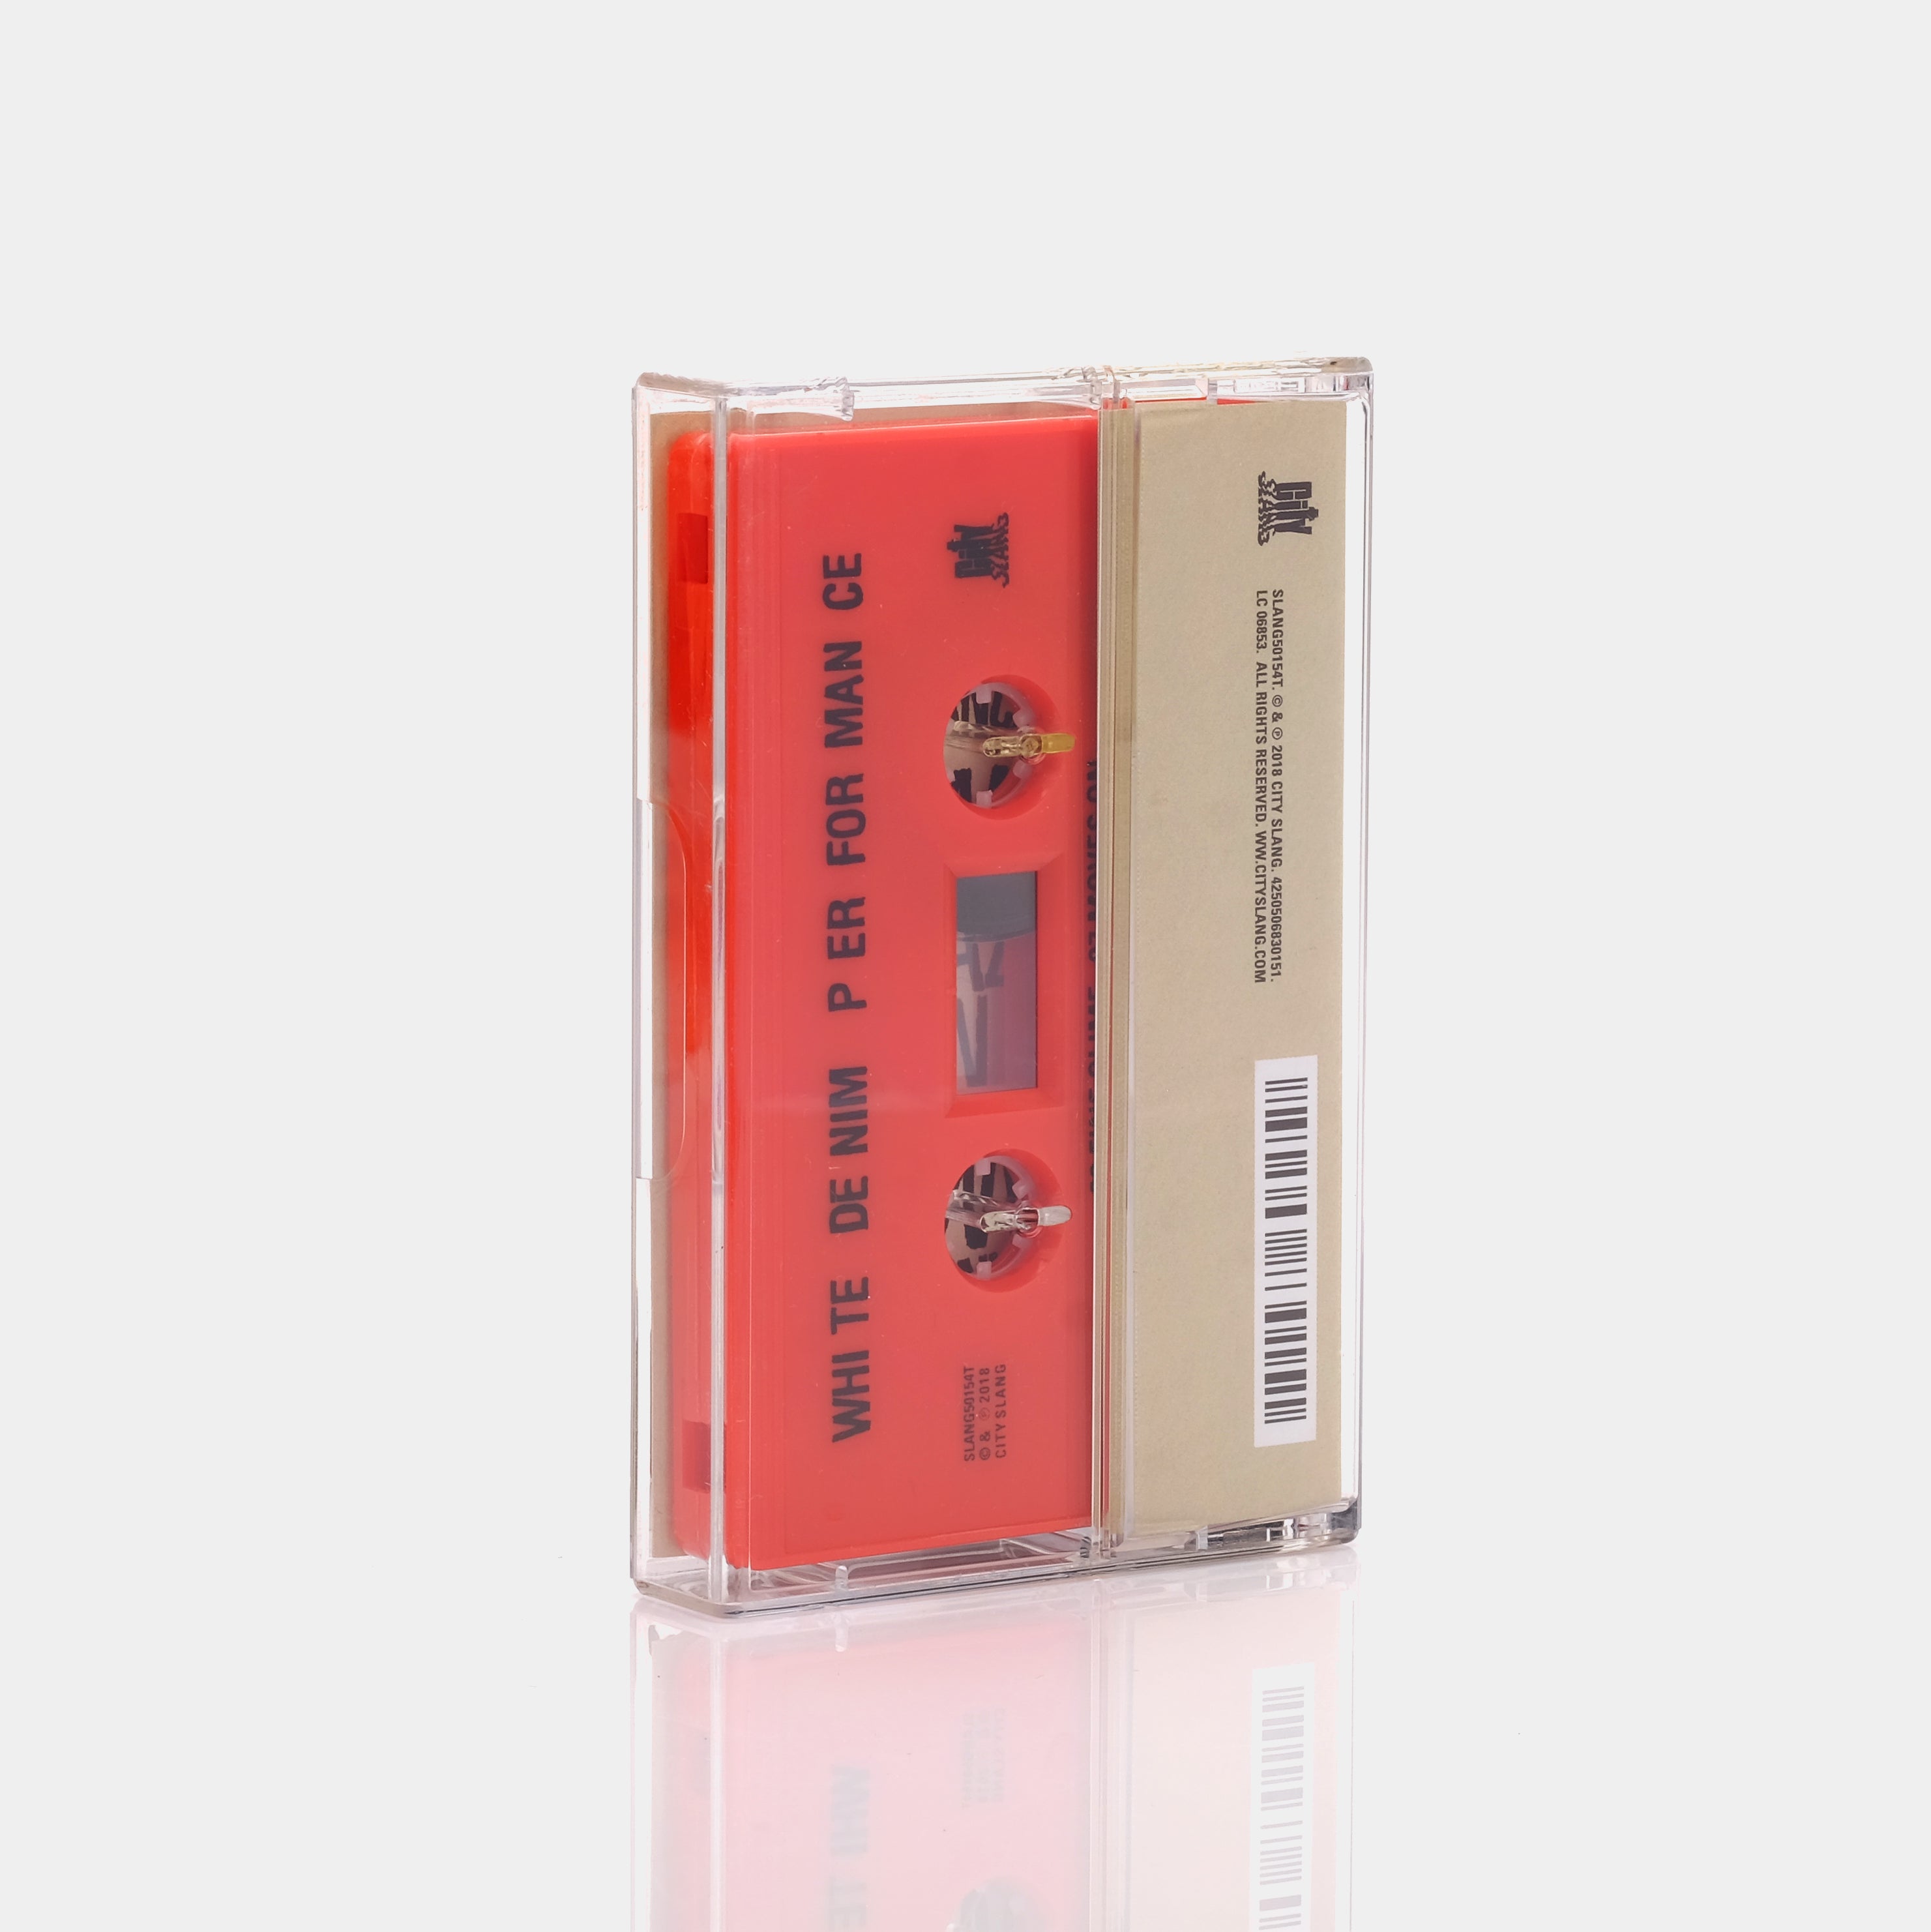 White Denim - Performance Cassette Tape